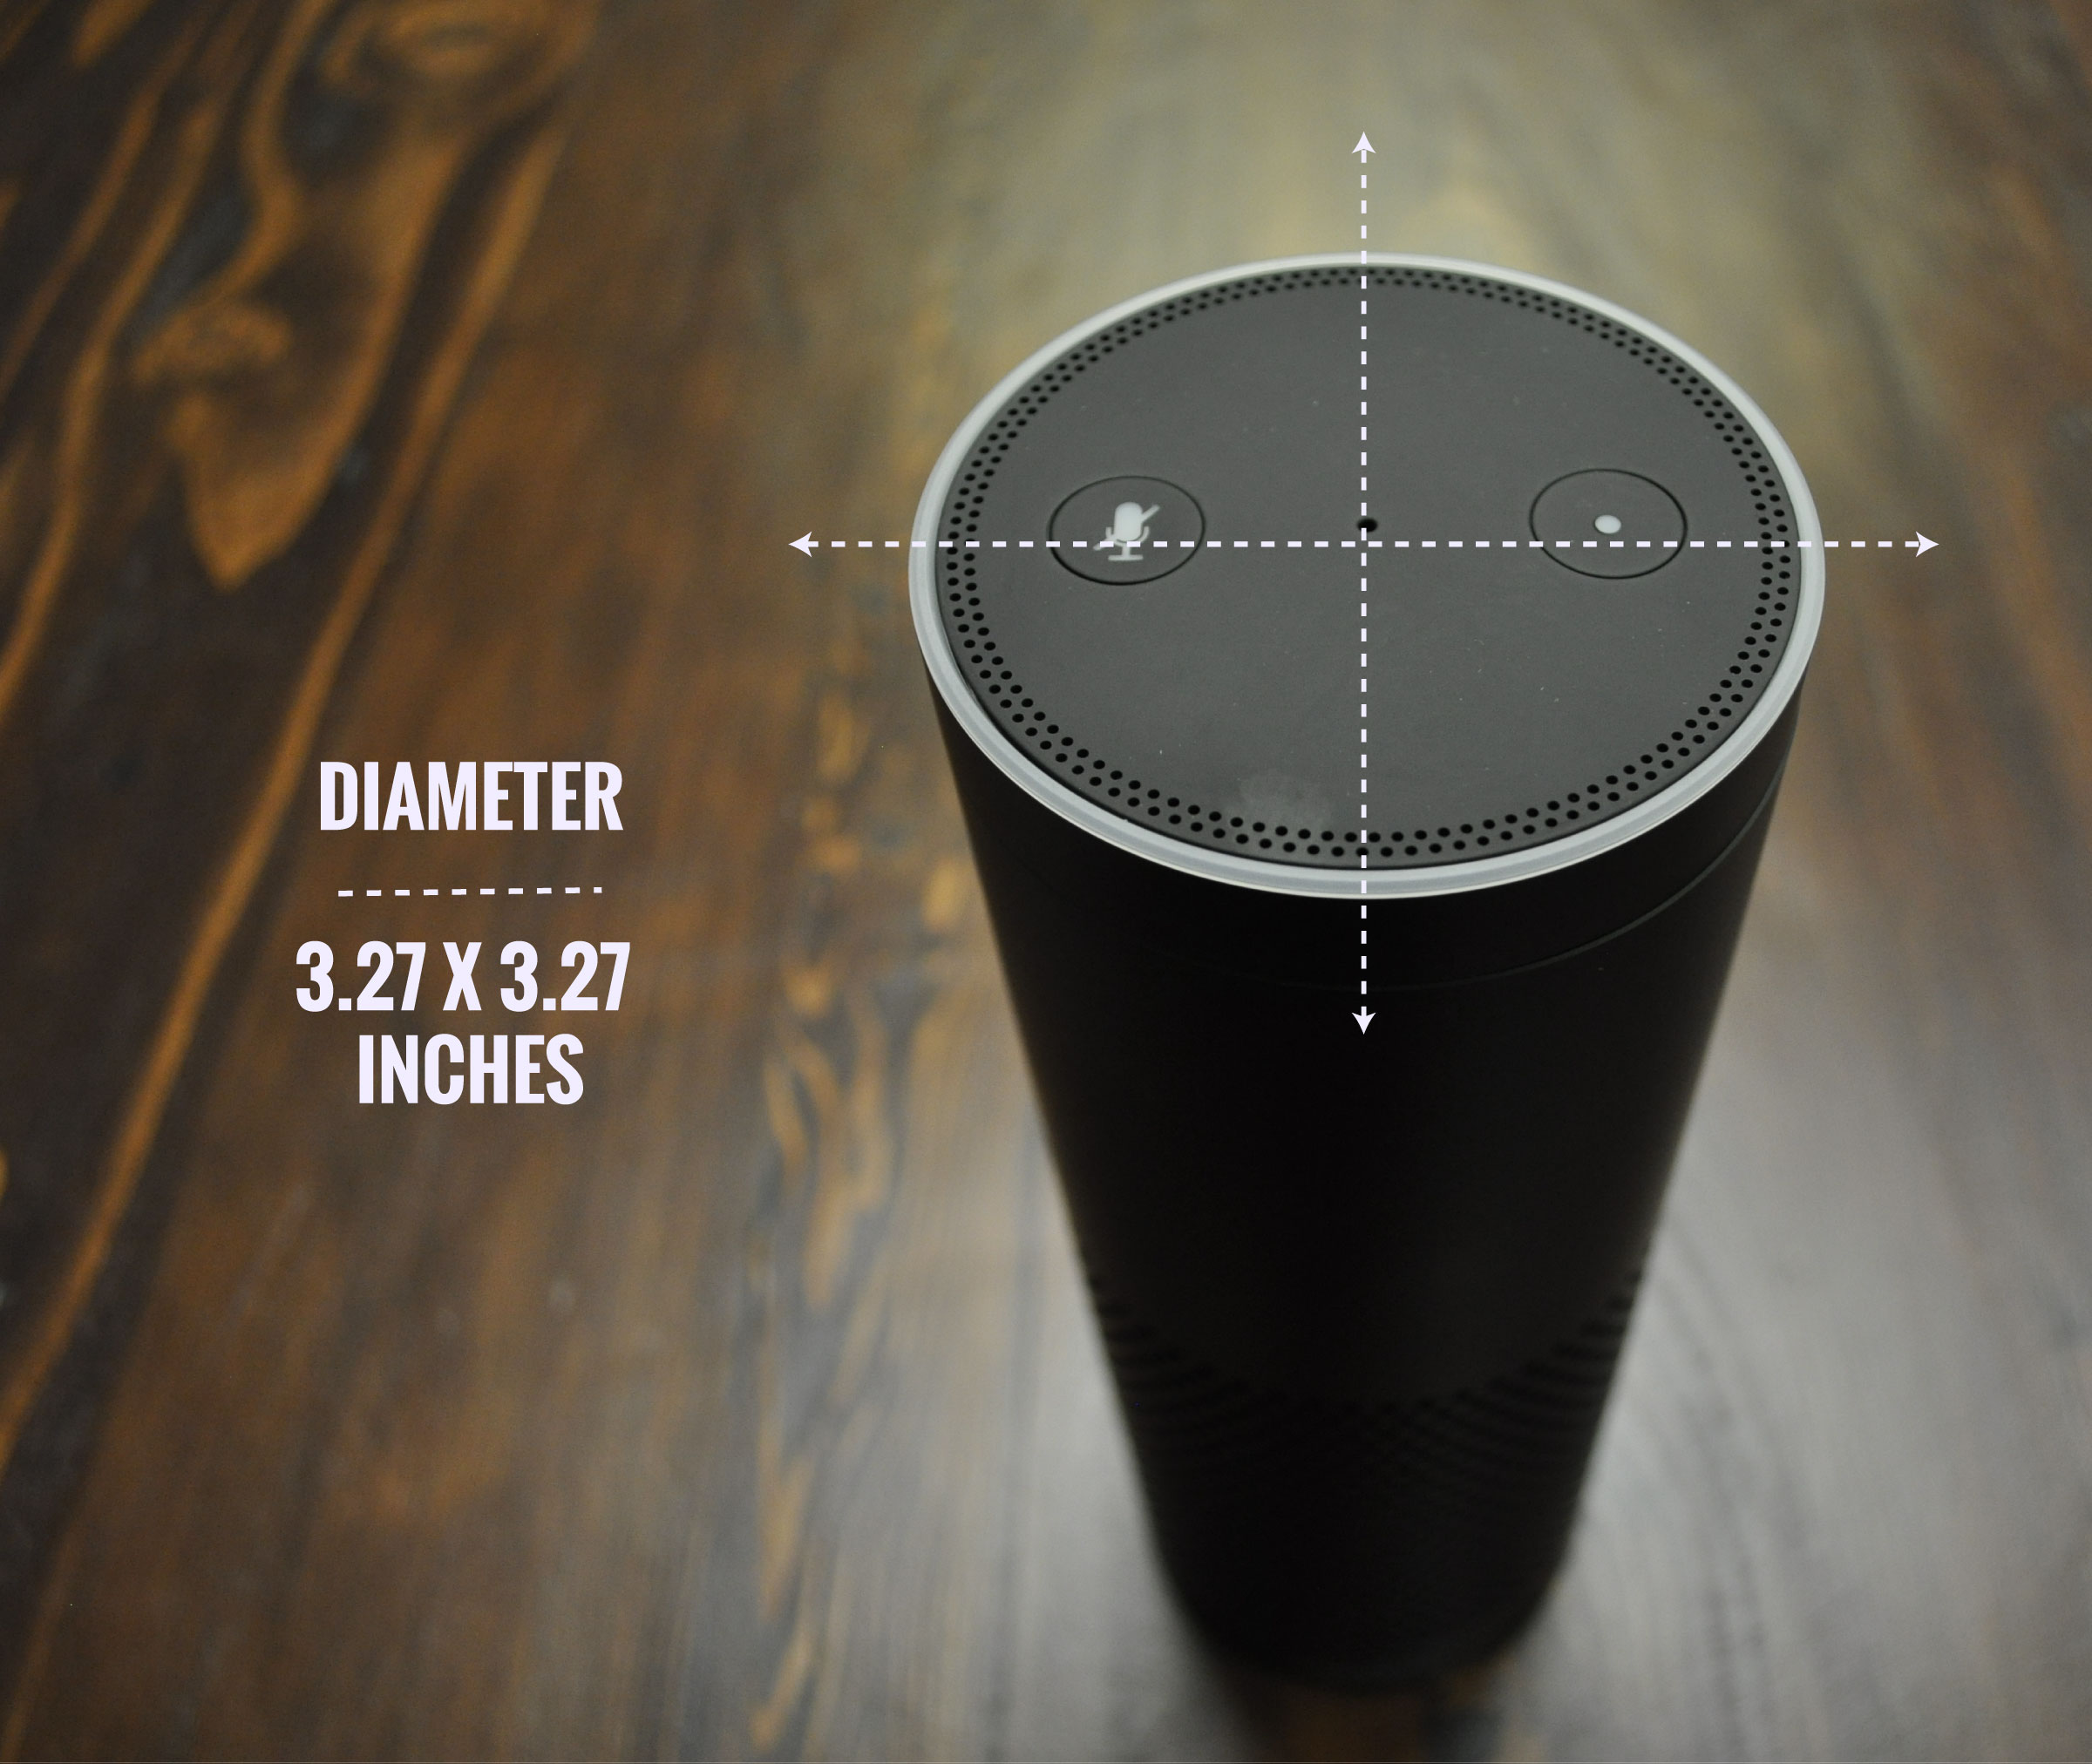 Amazon-Echo-diameter